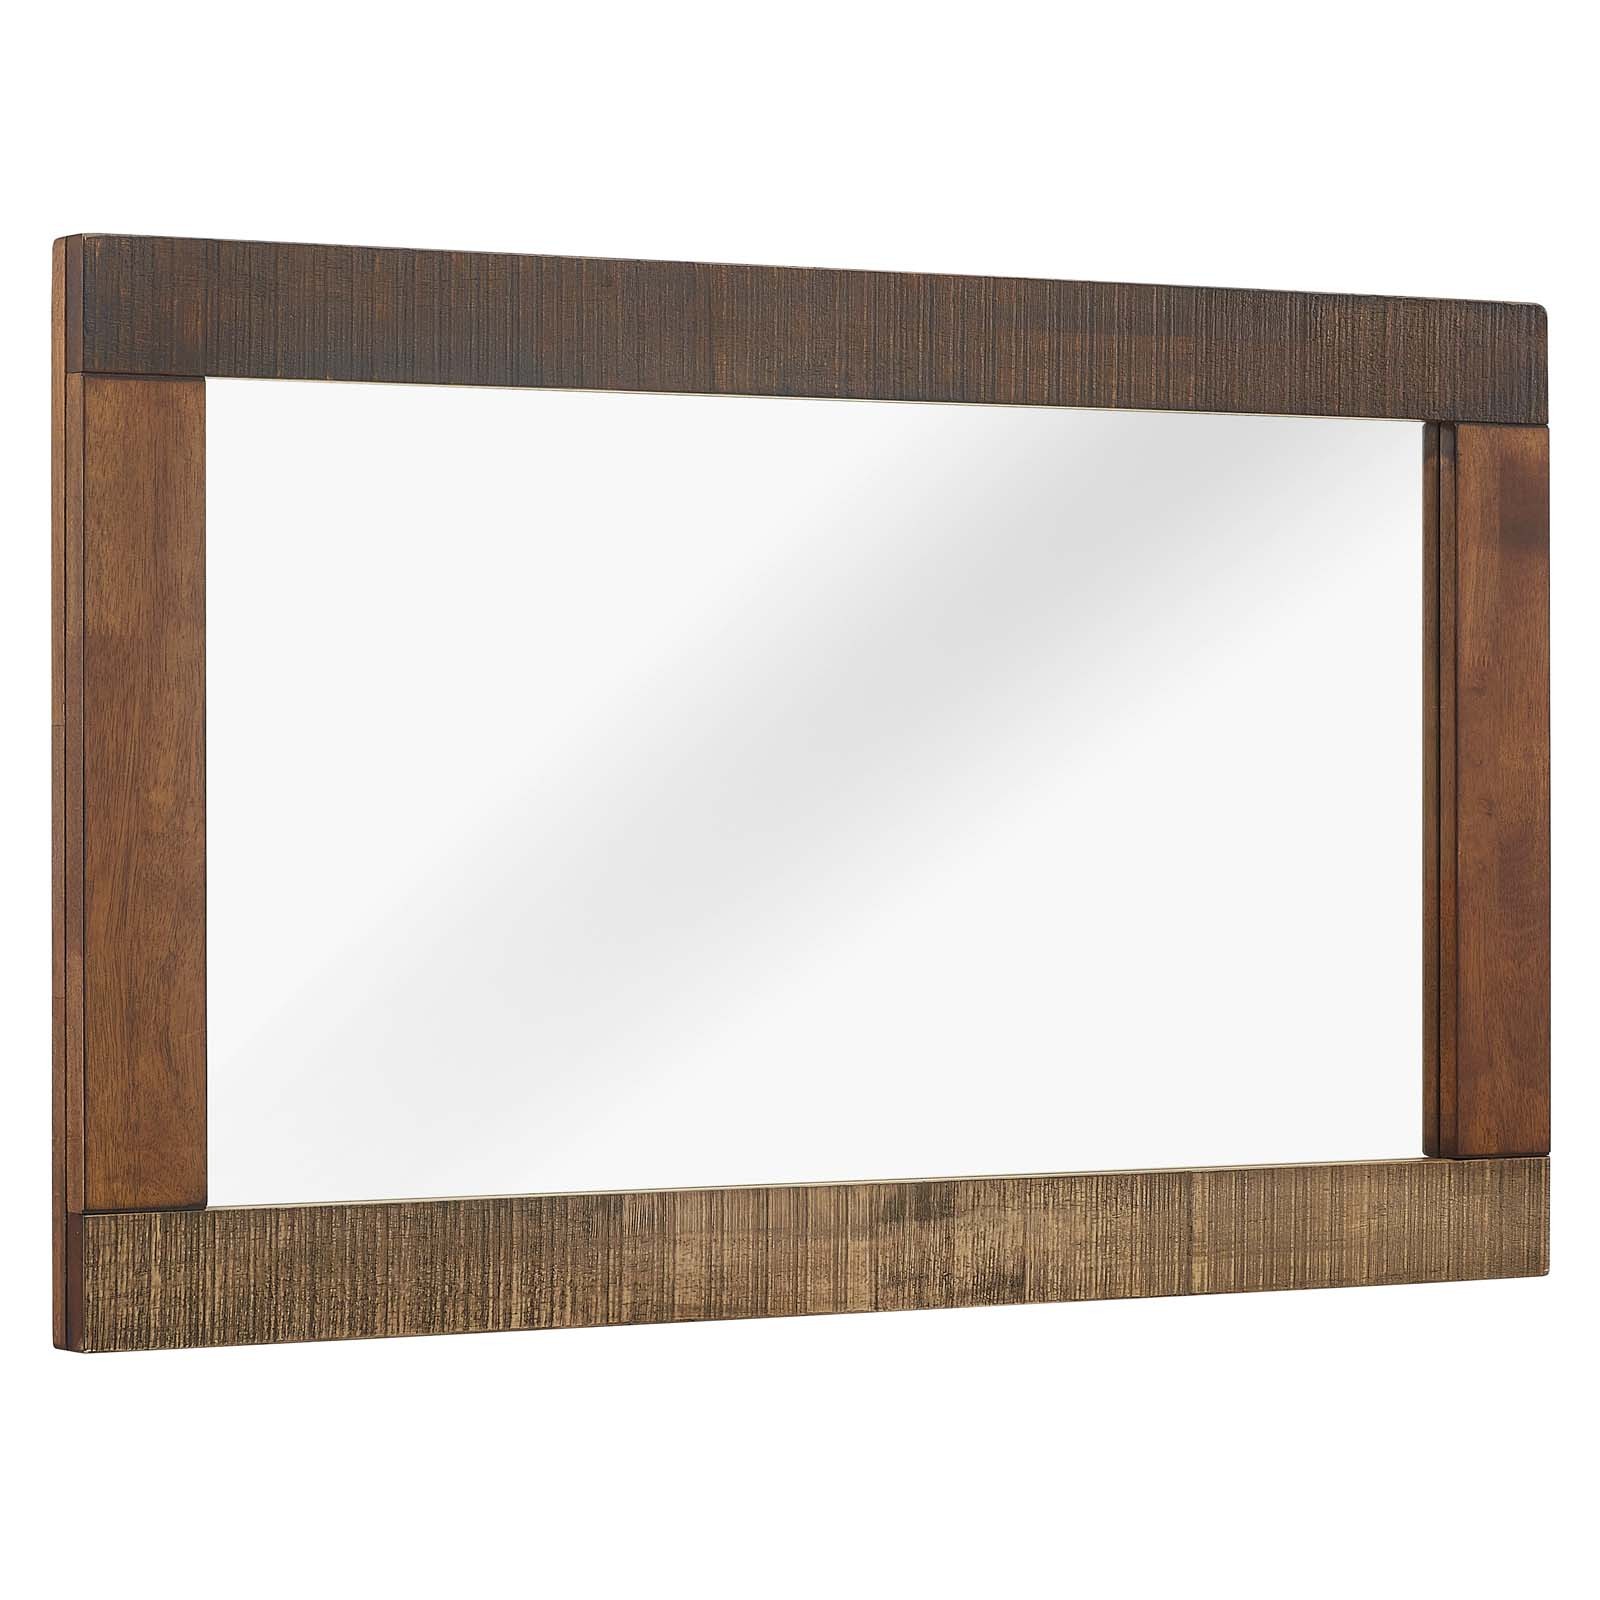 Arwen Rustic Wood Frame Mirror in Walnut